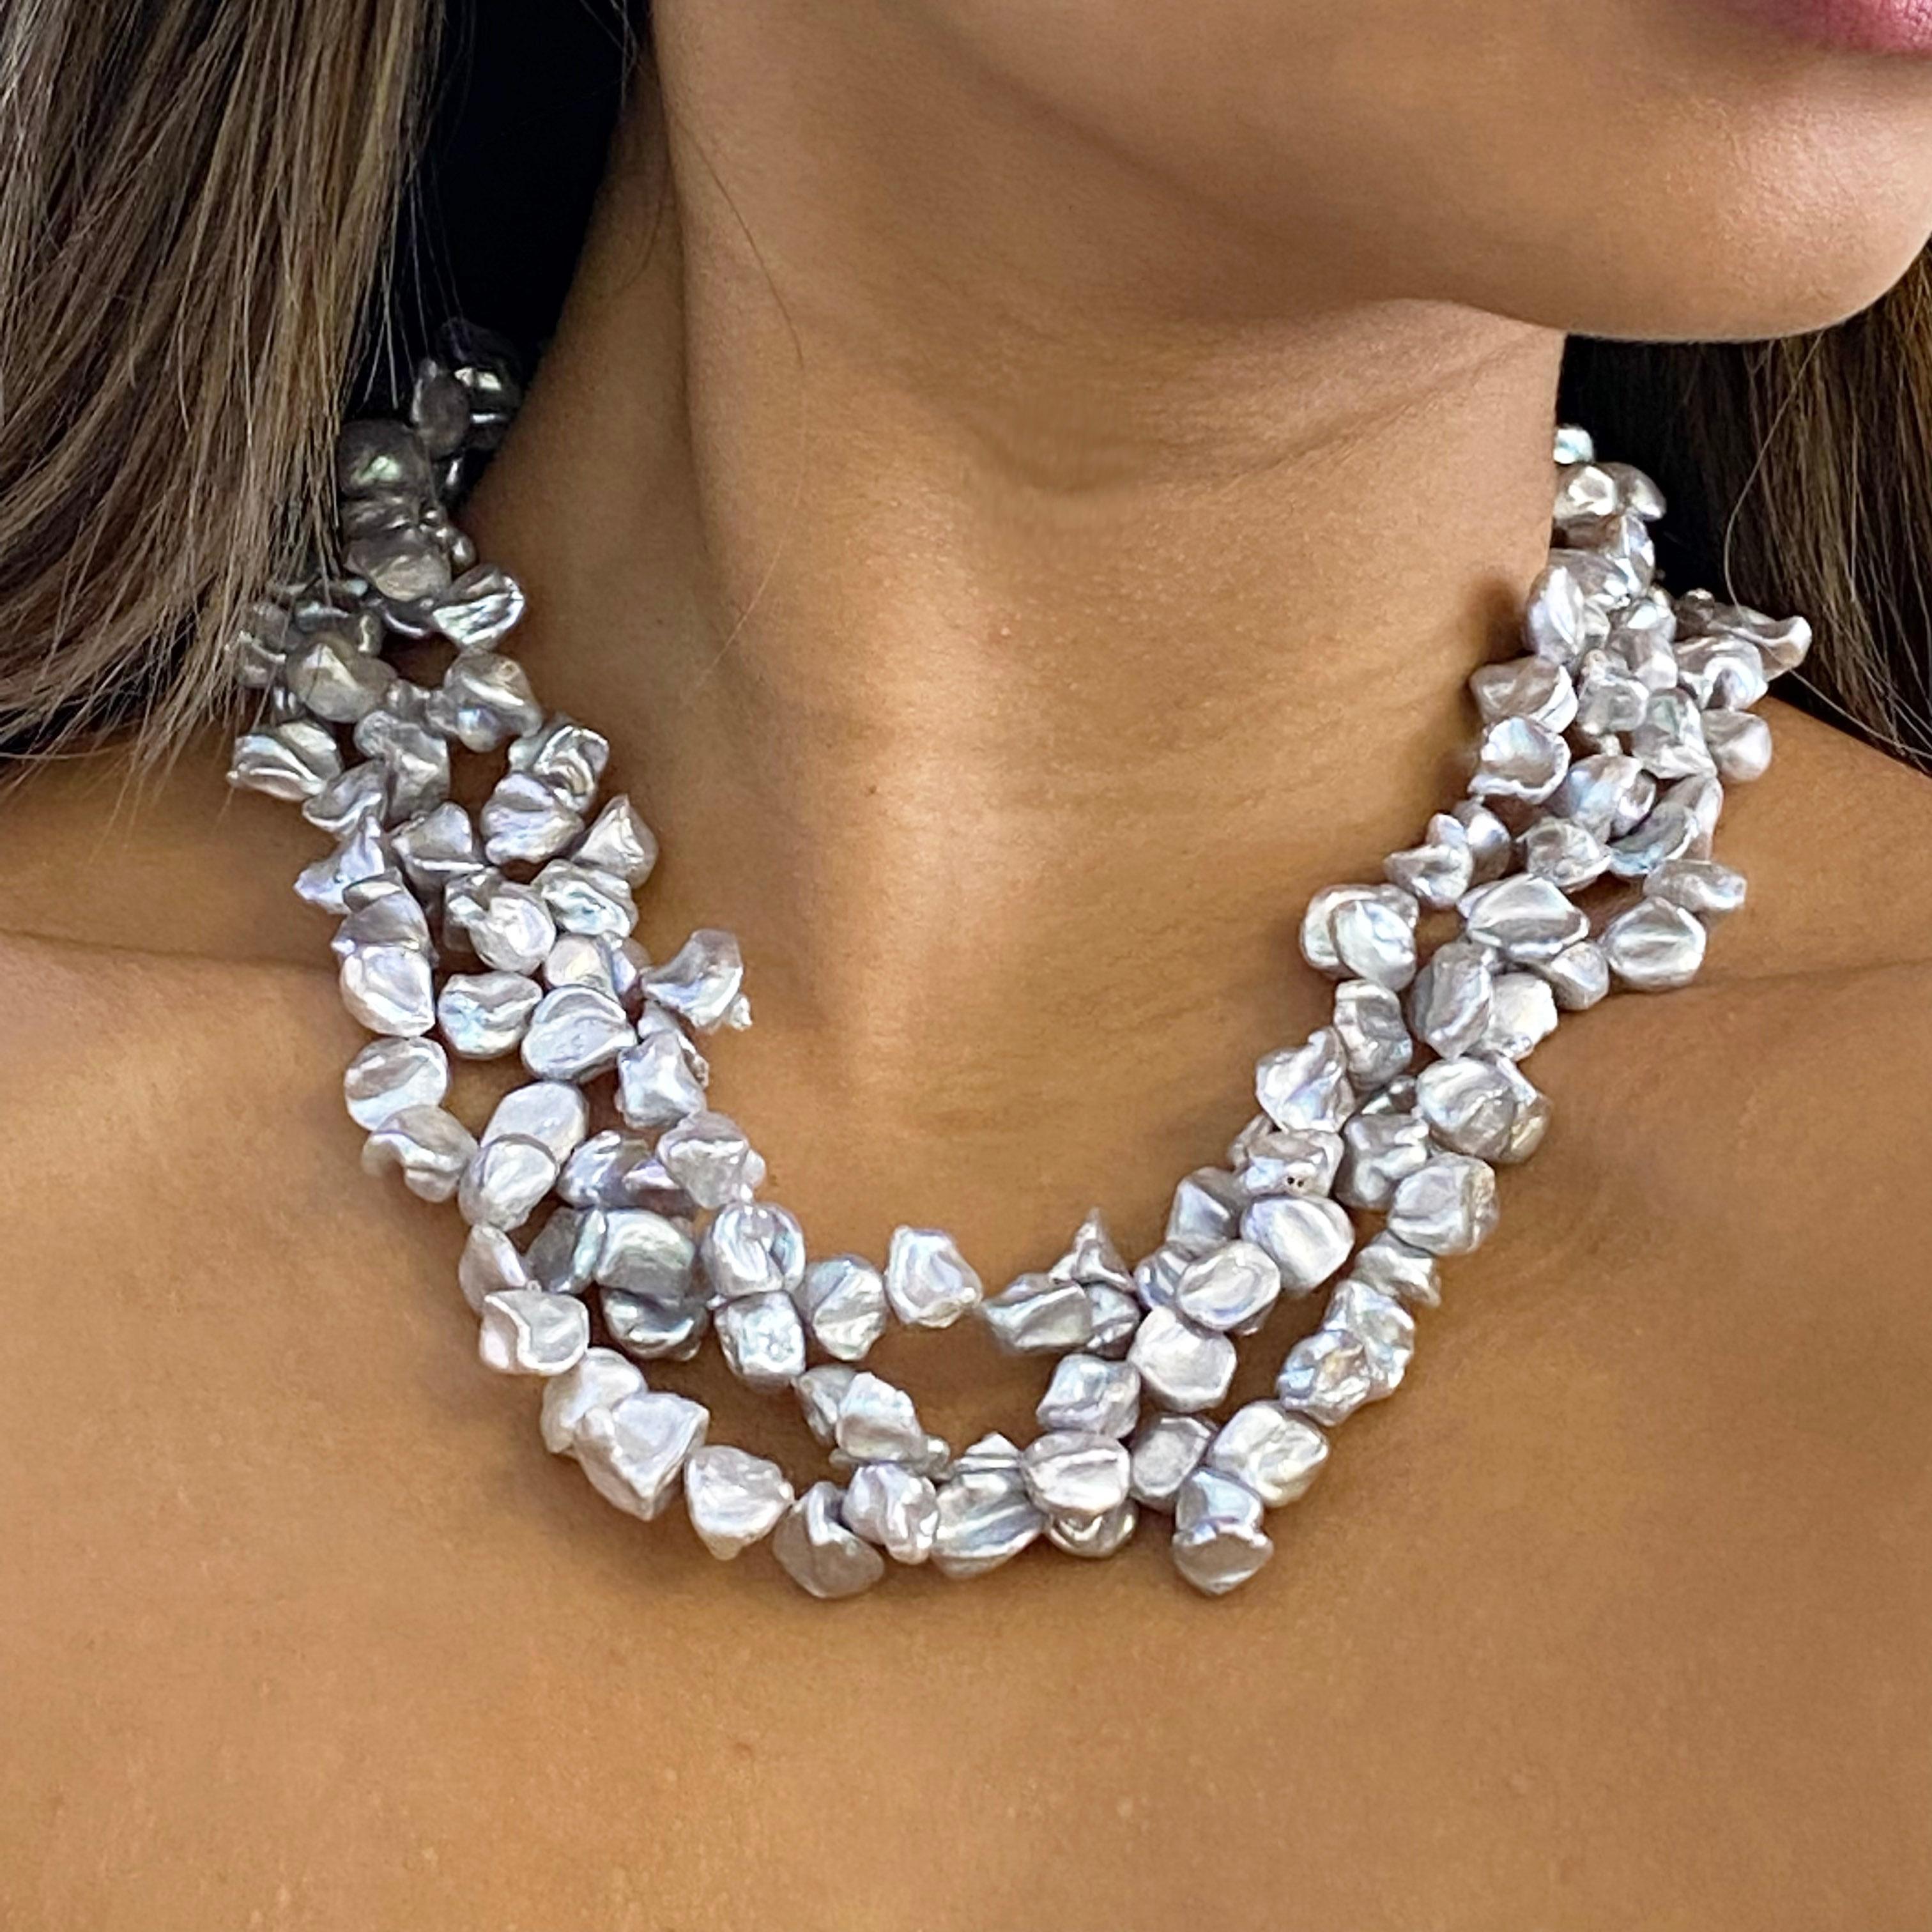 Ces perles baroques sont très intéressantes et uniques. Chaque perle a formé sa propre forme unique créée par Mère Nature ! La couleur grise est très brillante et s'associe parfaitement aux couleurs noires, rouges, roses et bleues. Il s'agit sans